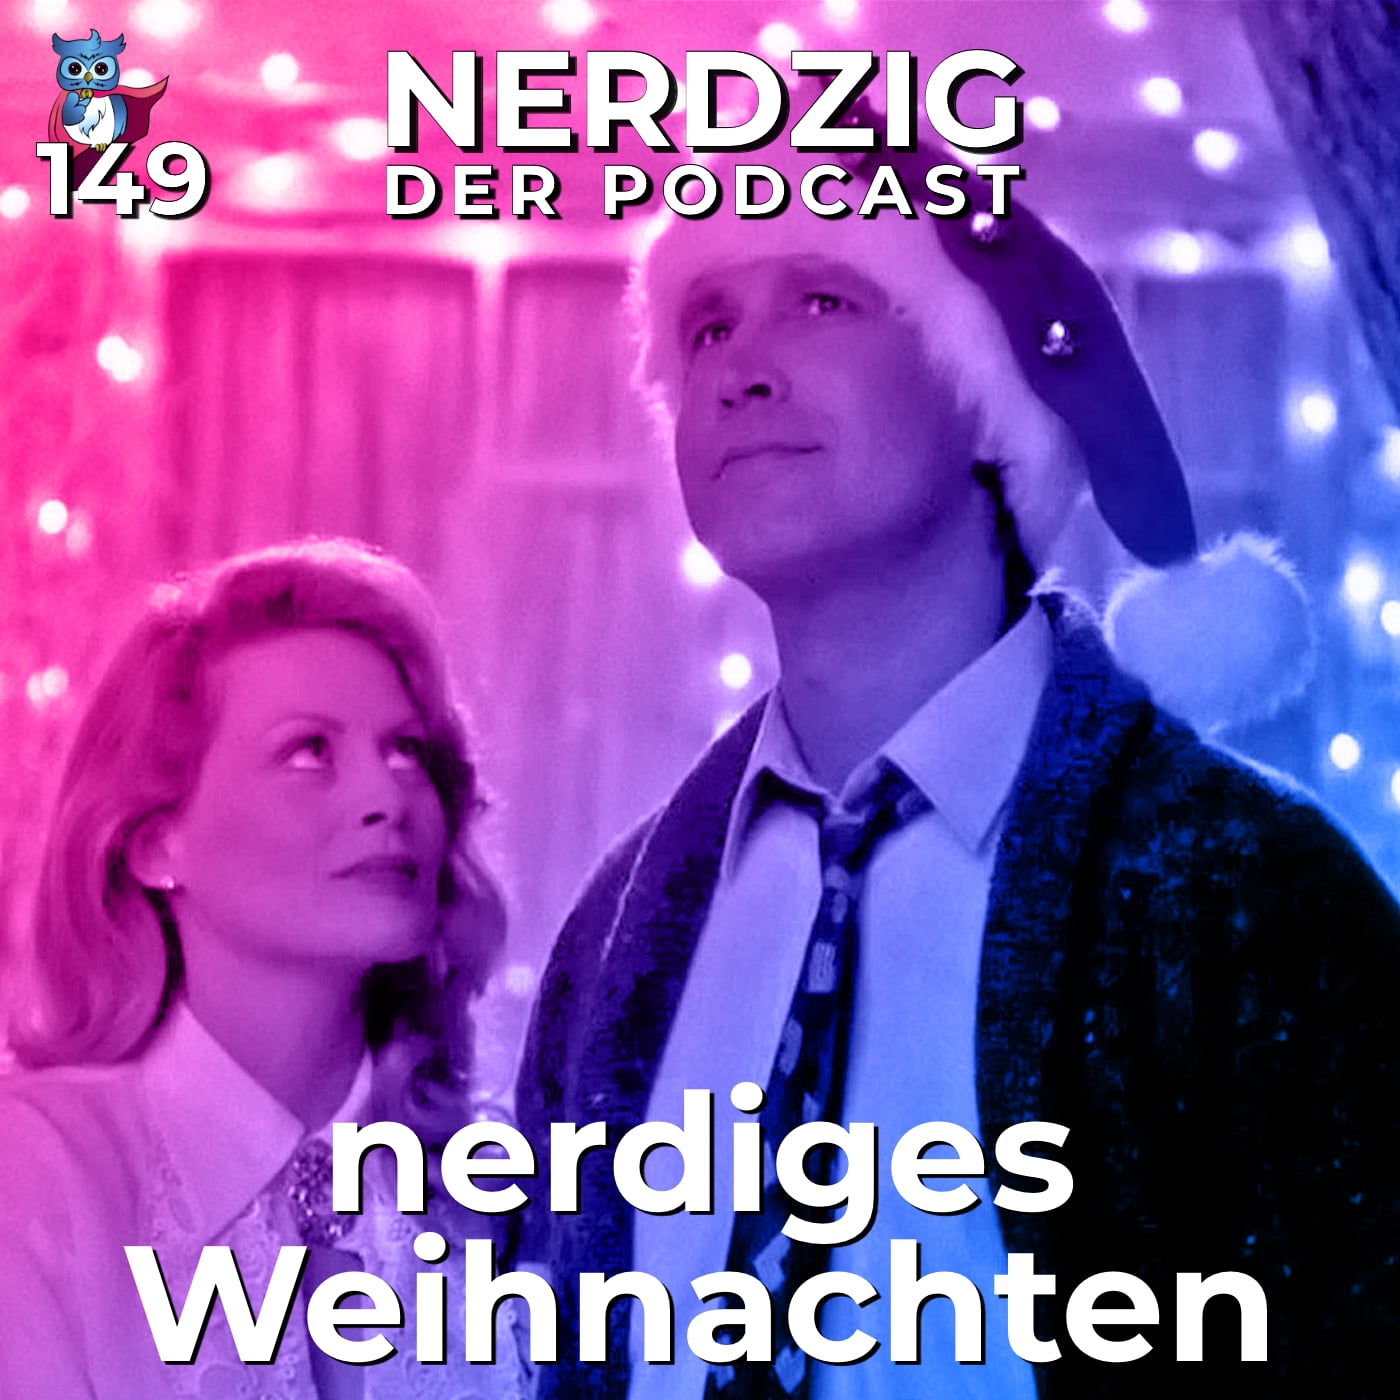 Nerdzig - Der Podcast #149 – nerdiges Weihnachten